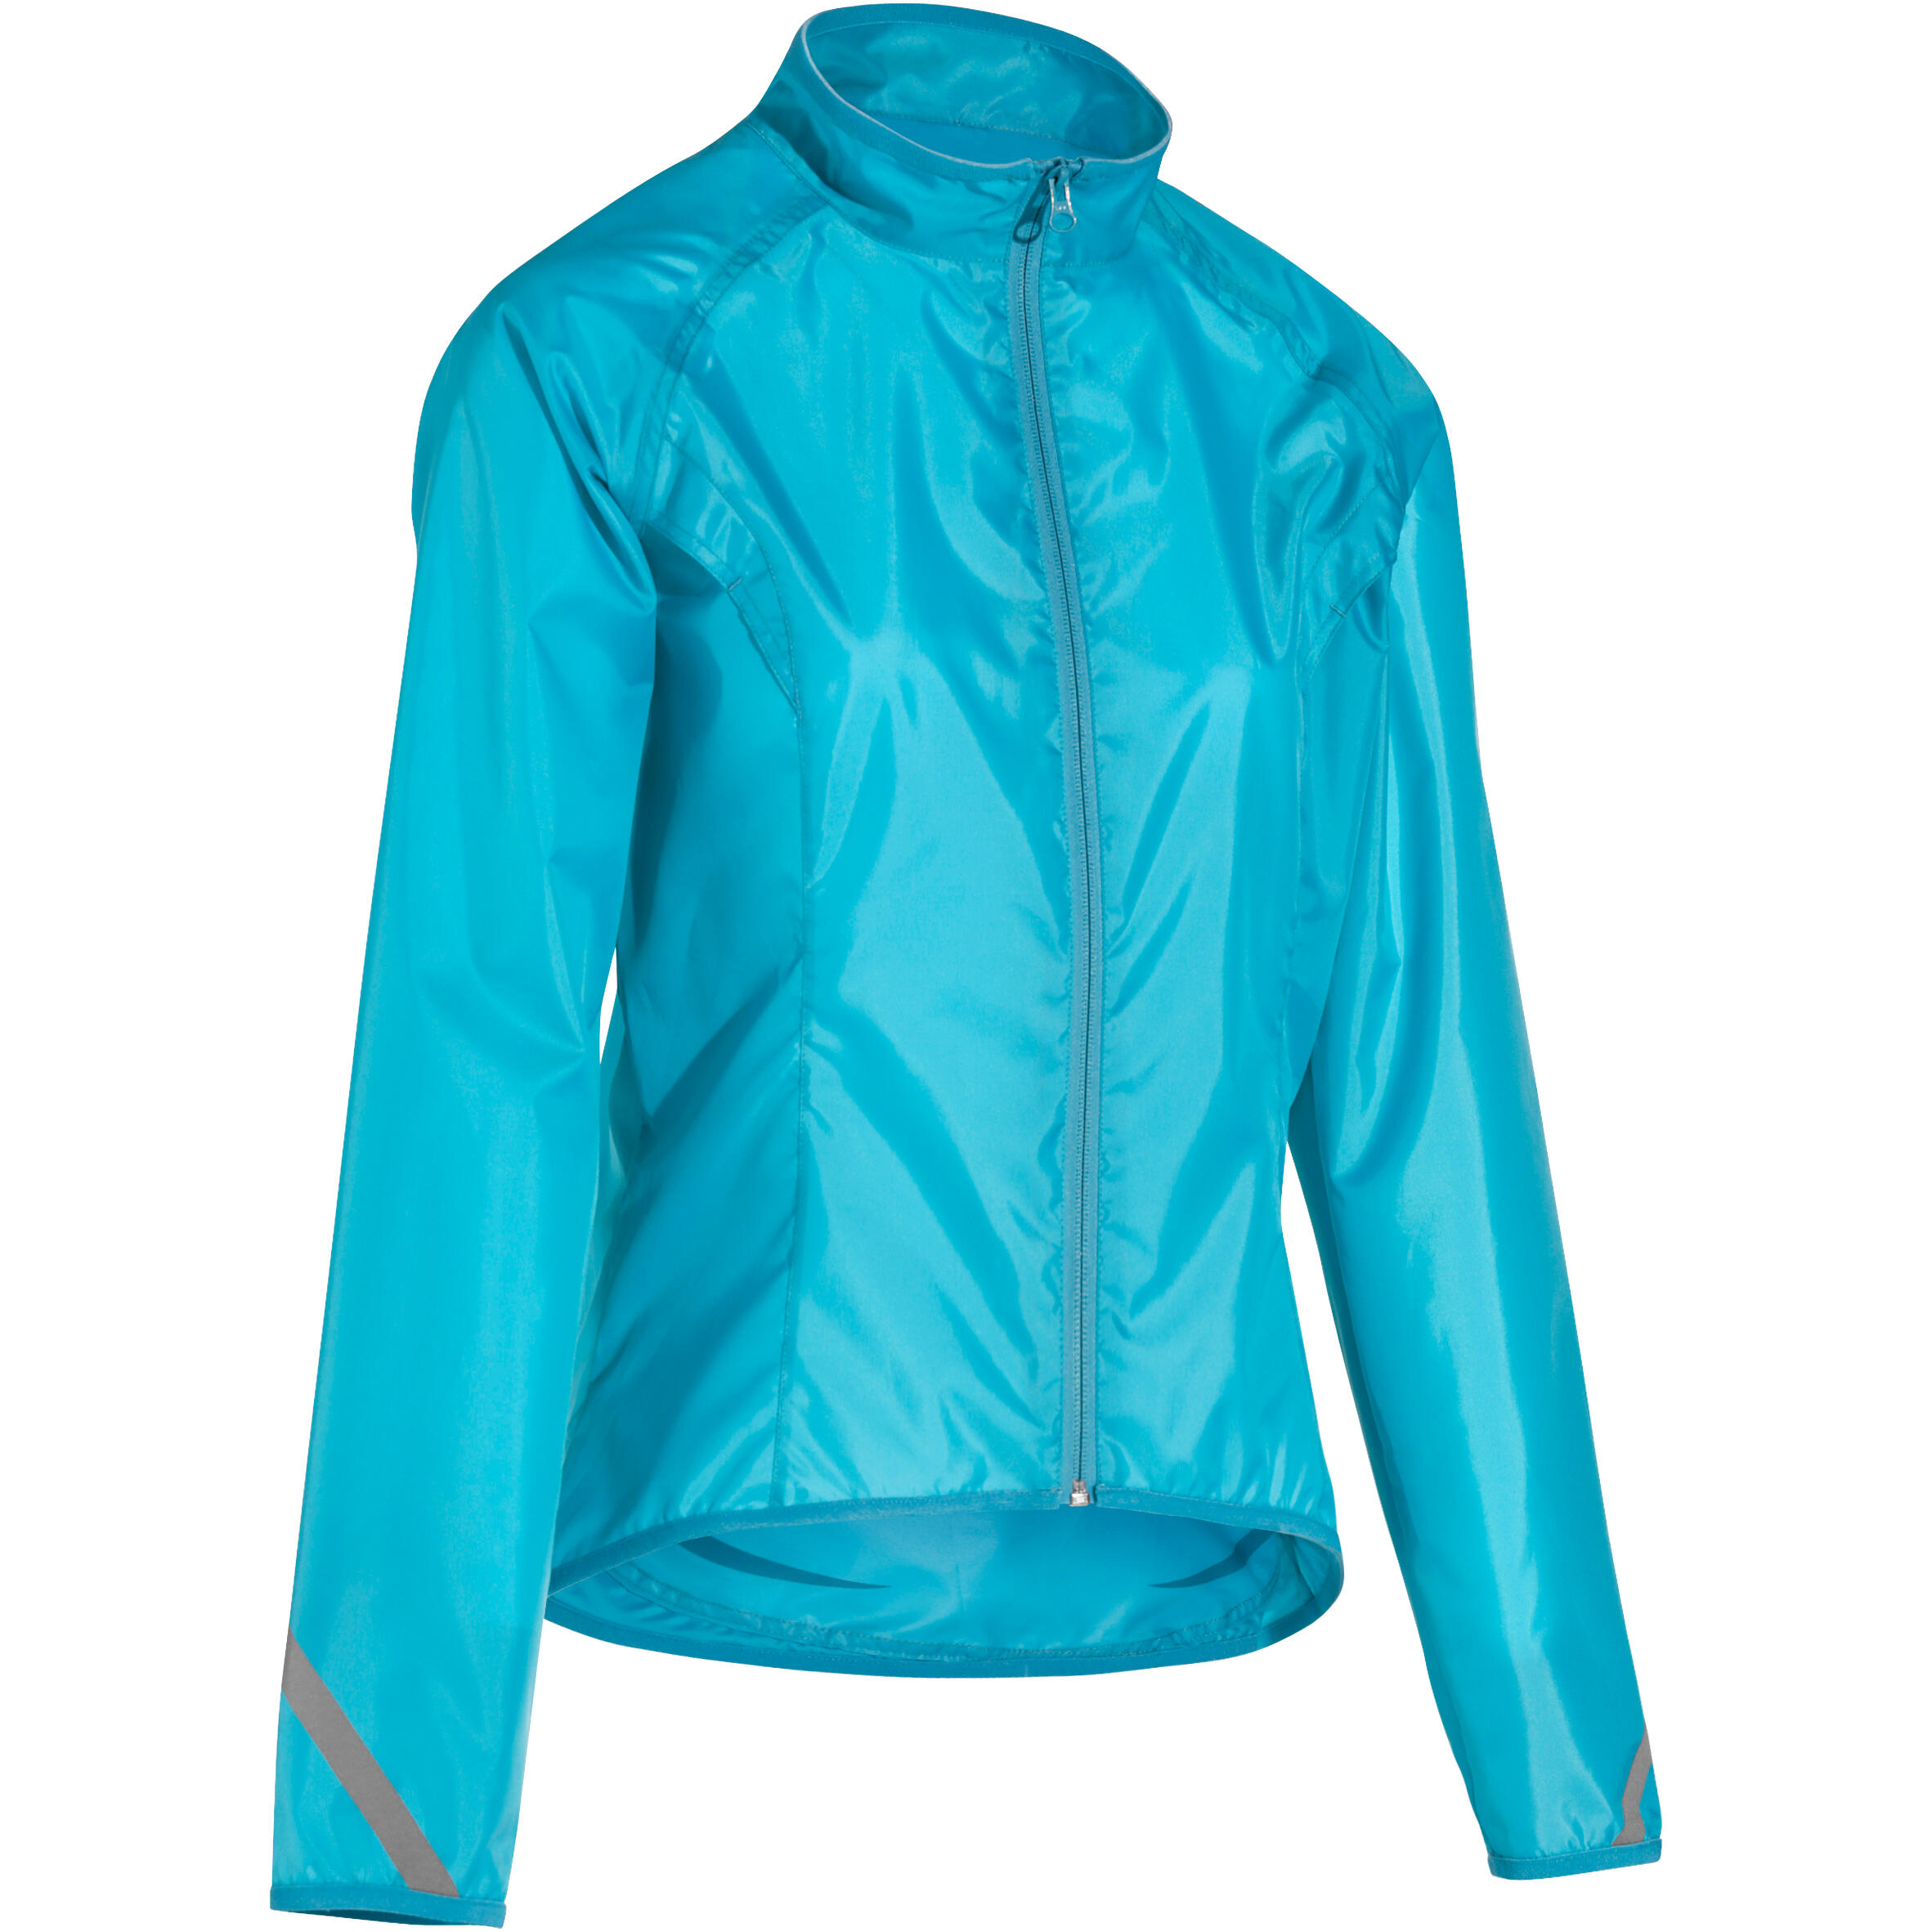 BTWIN 300 Women's Cycling Rain Jacket - Blue